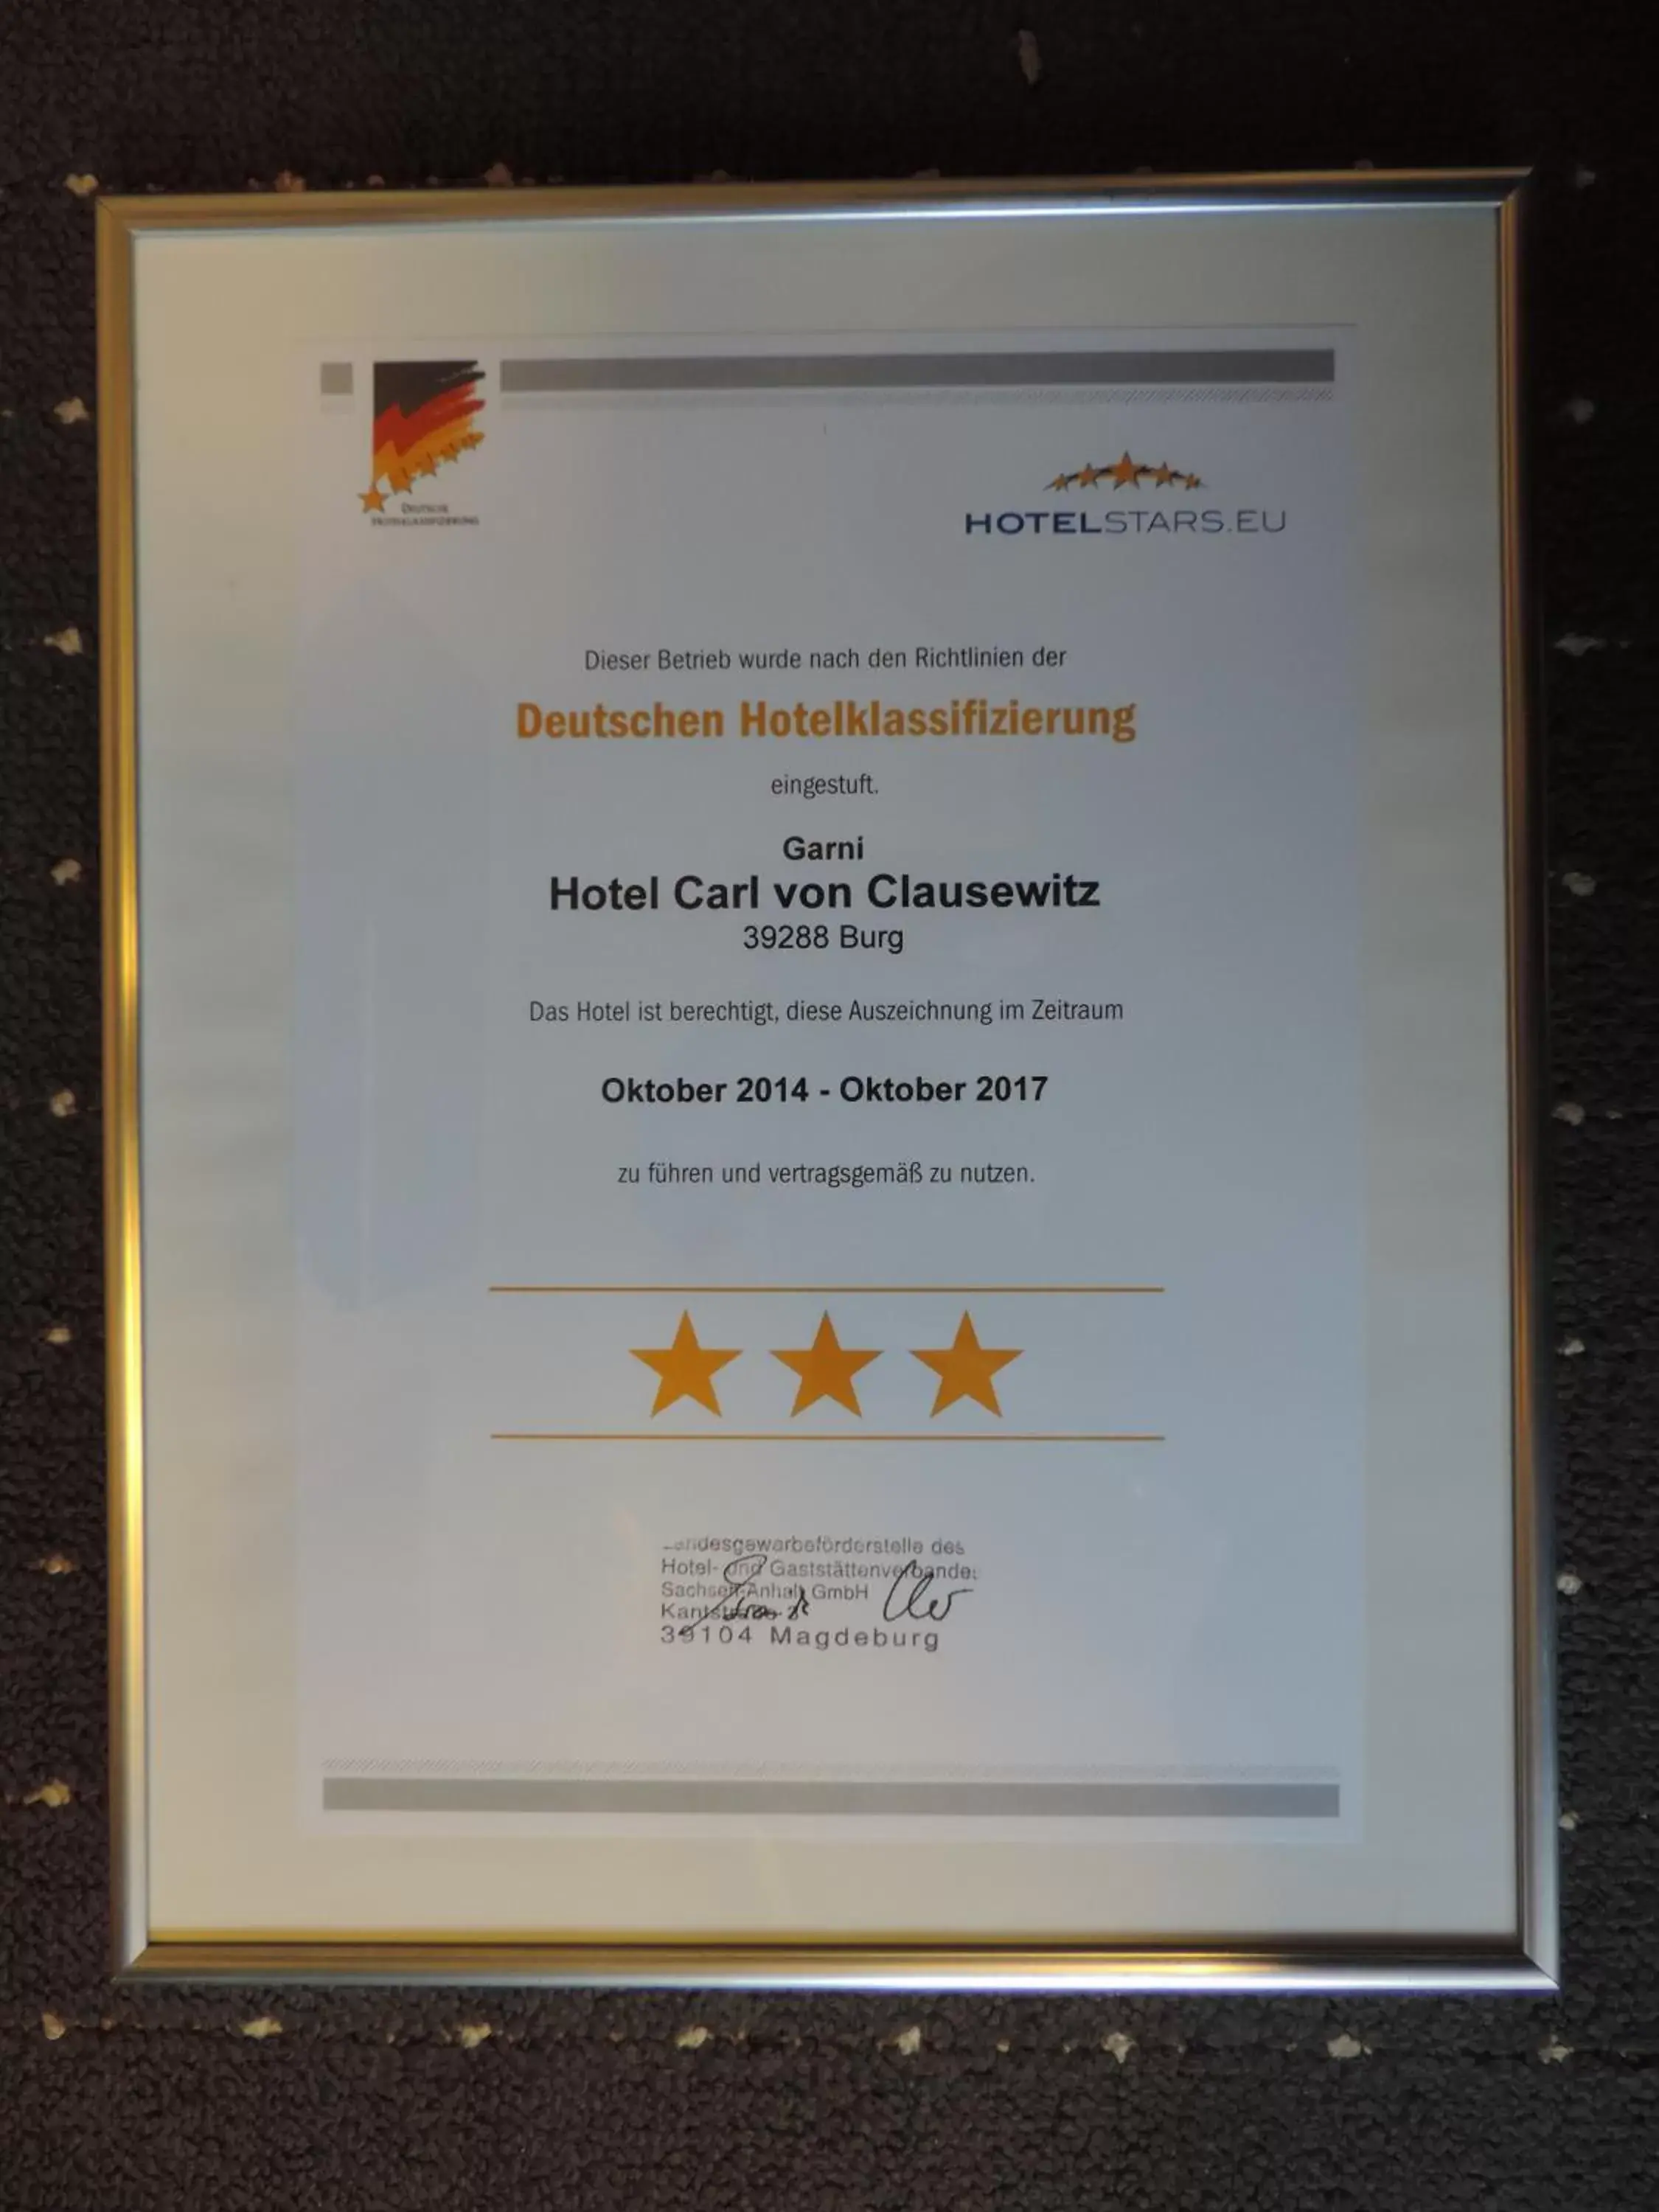 Certificate/Award in Hotel Carl von Clausewitz